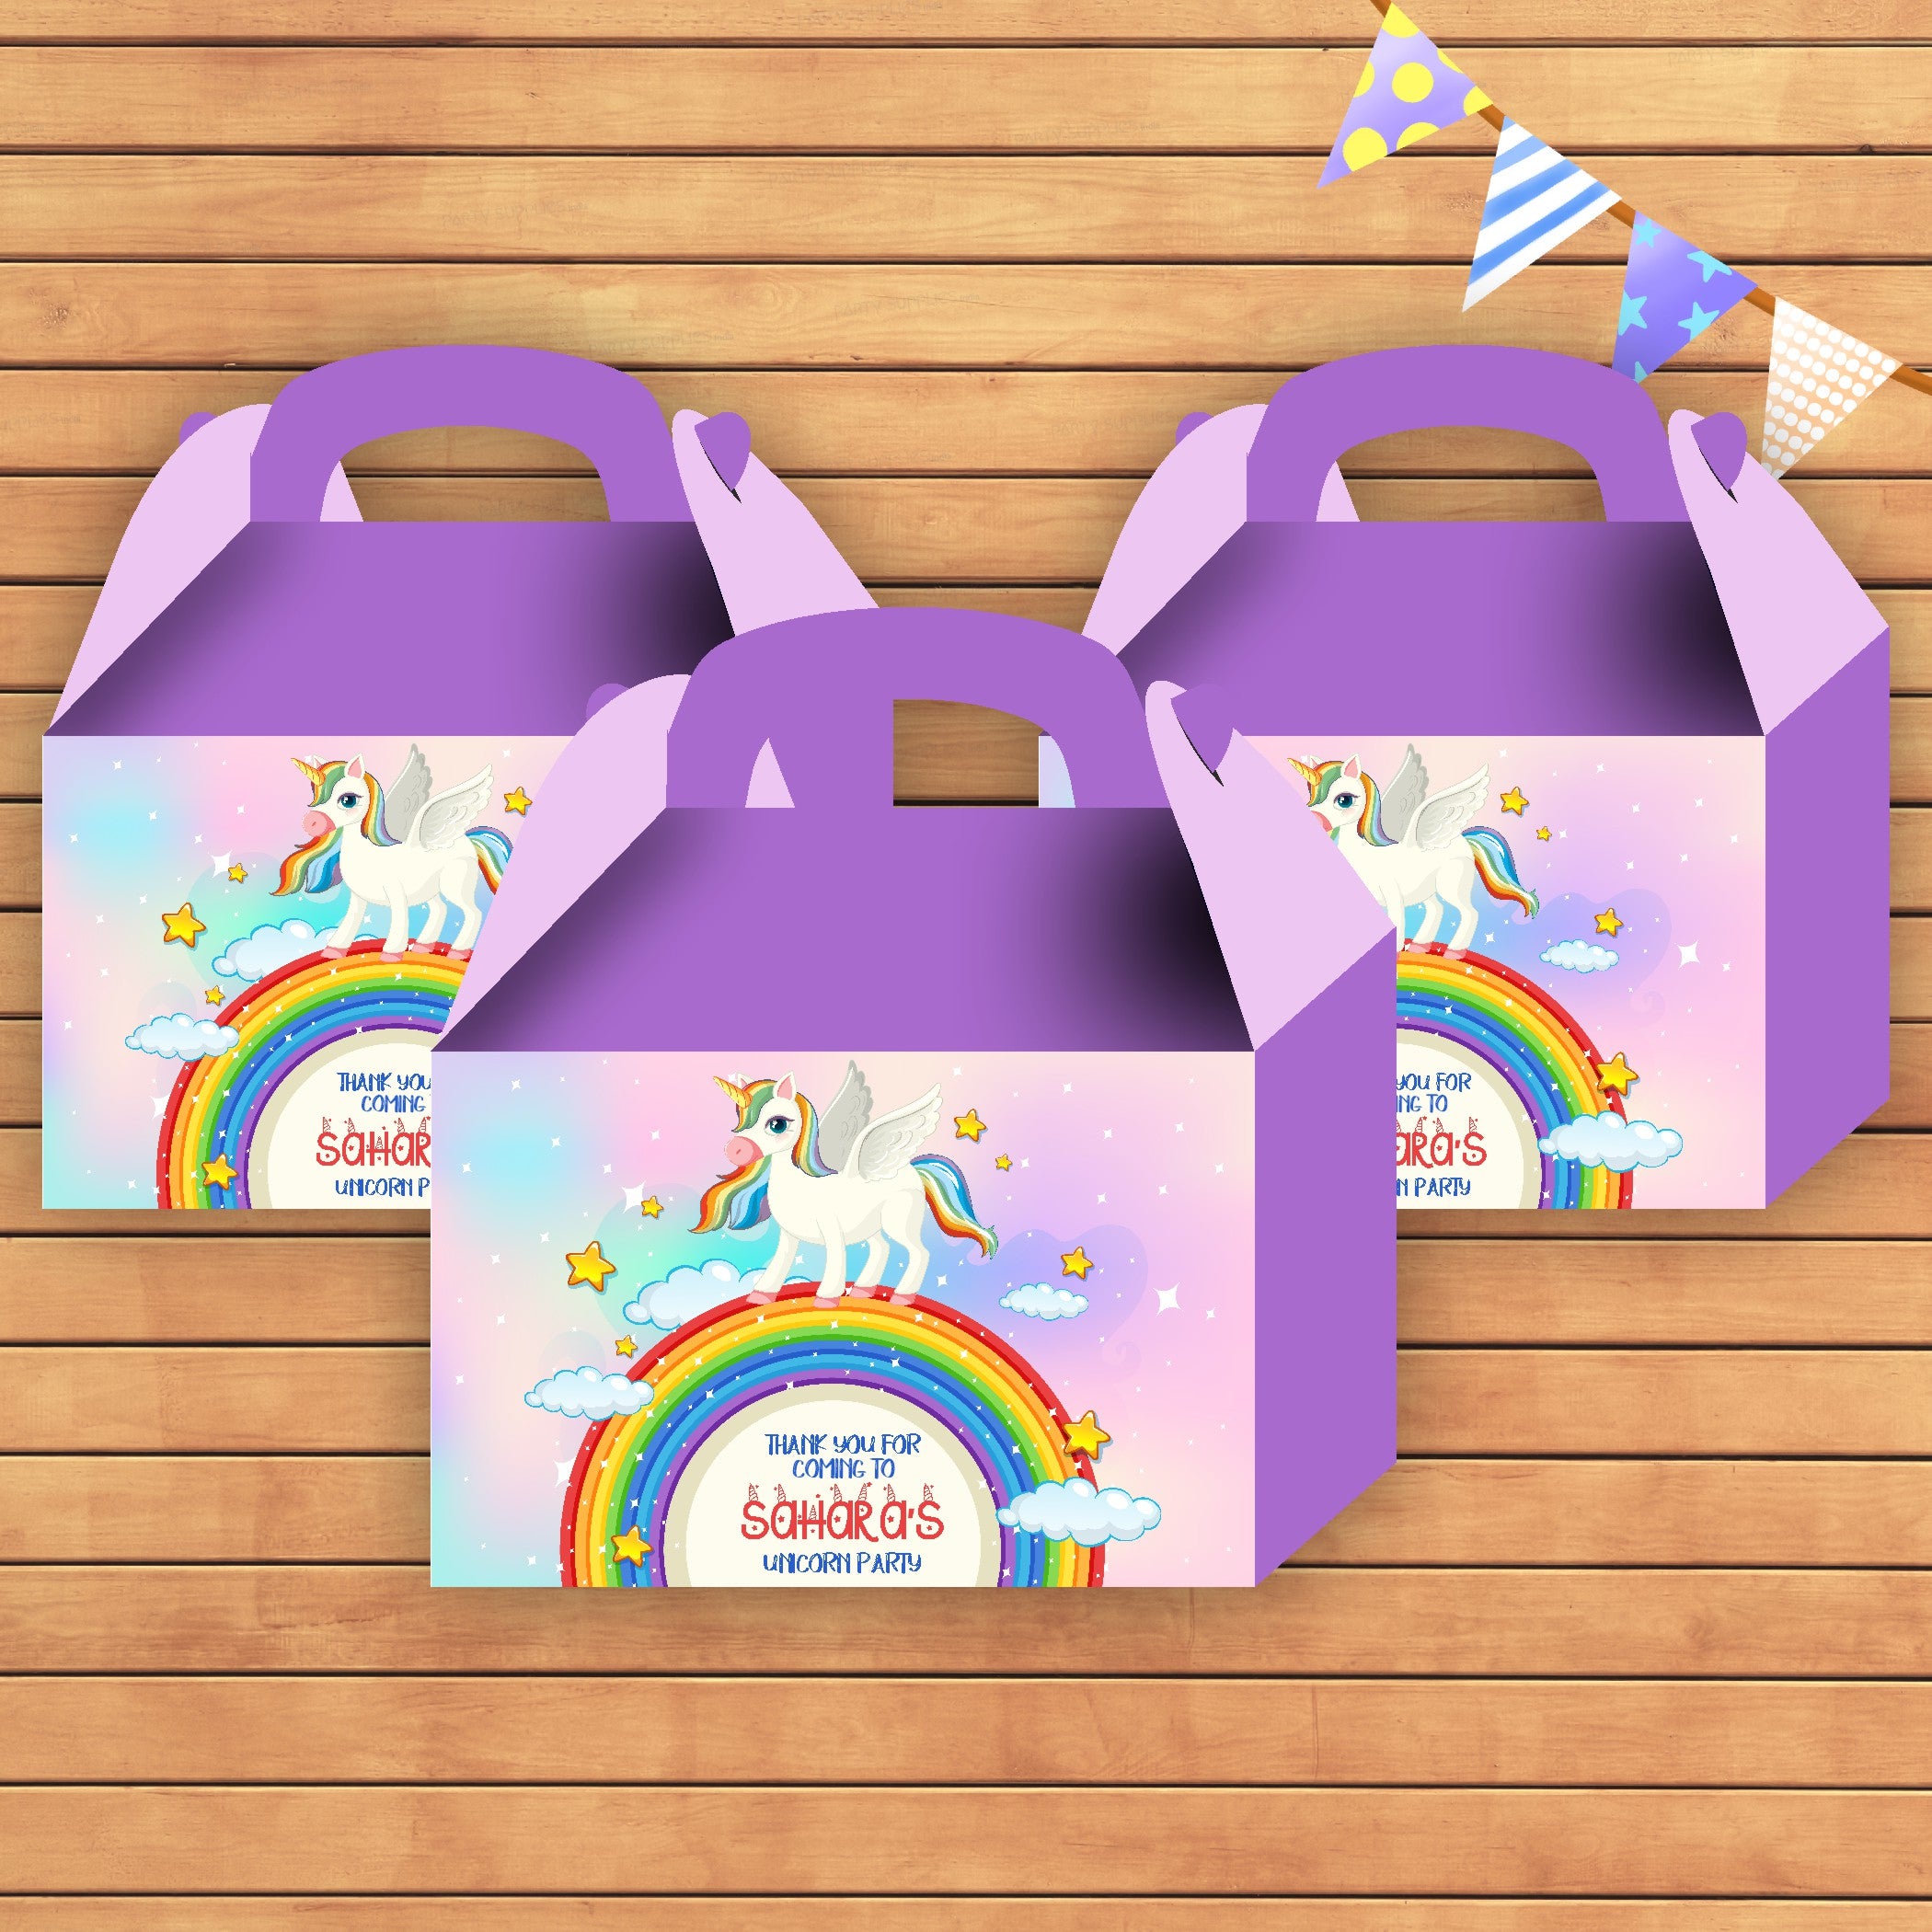 PSI Unicorn Theme Goodie Return Gift Boxes